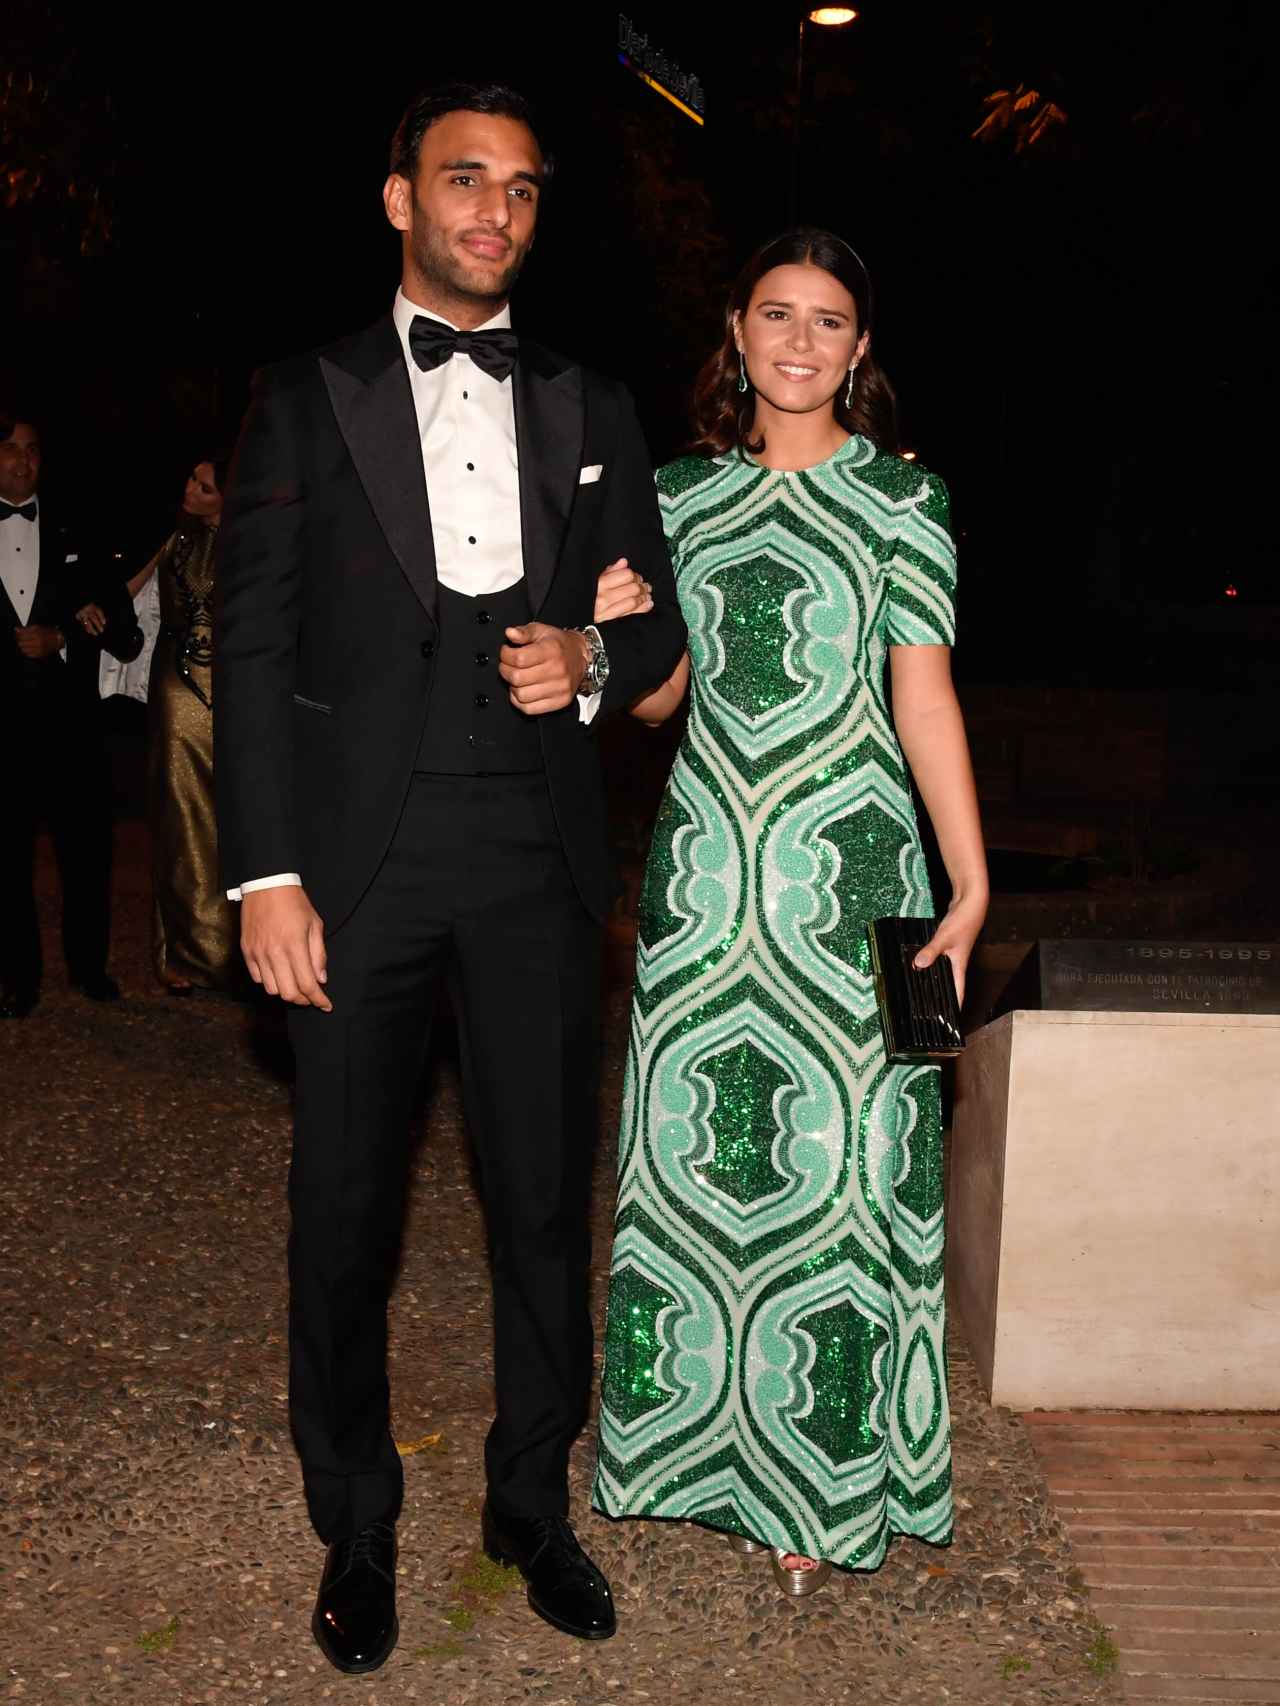 Tana Rivera junto a su novio, Manuel Vega, llegando a la cena de de gala previa a la exhibición de la Exhibición de Enganches.